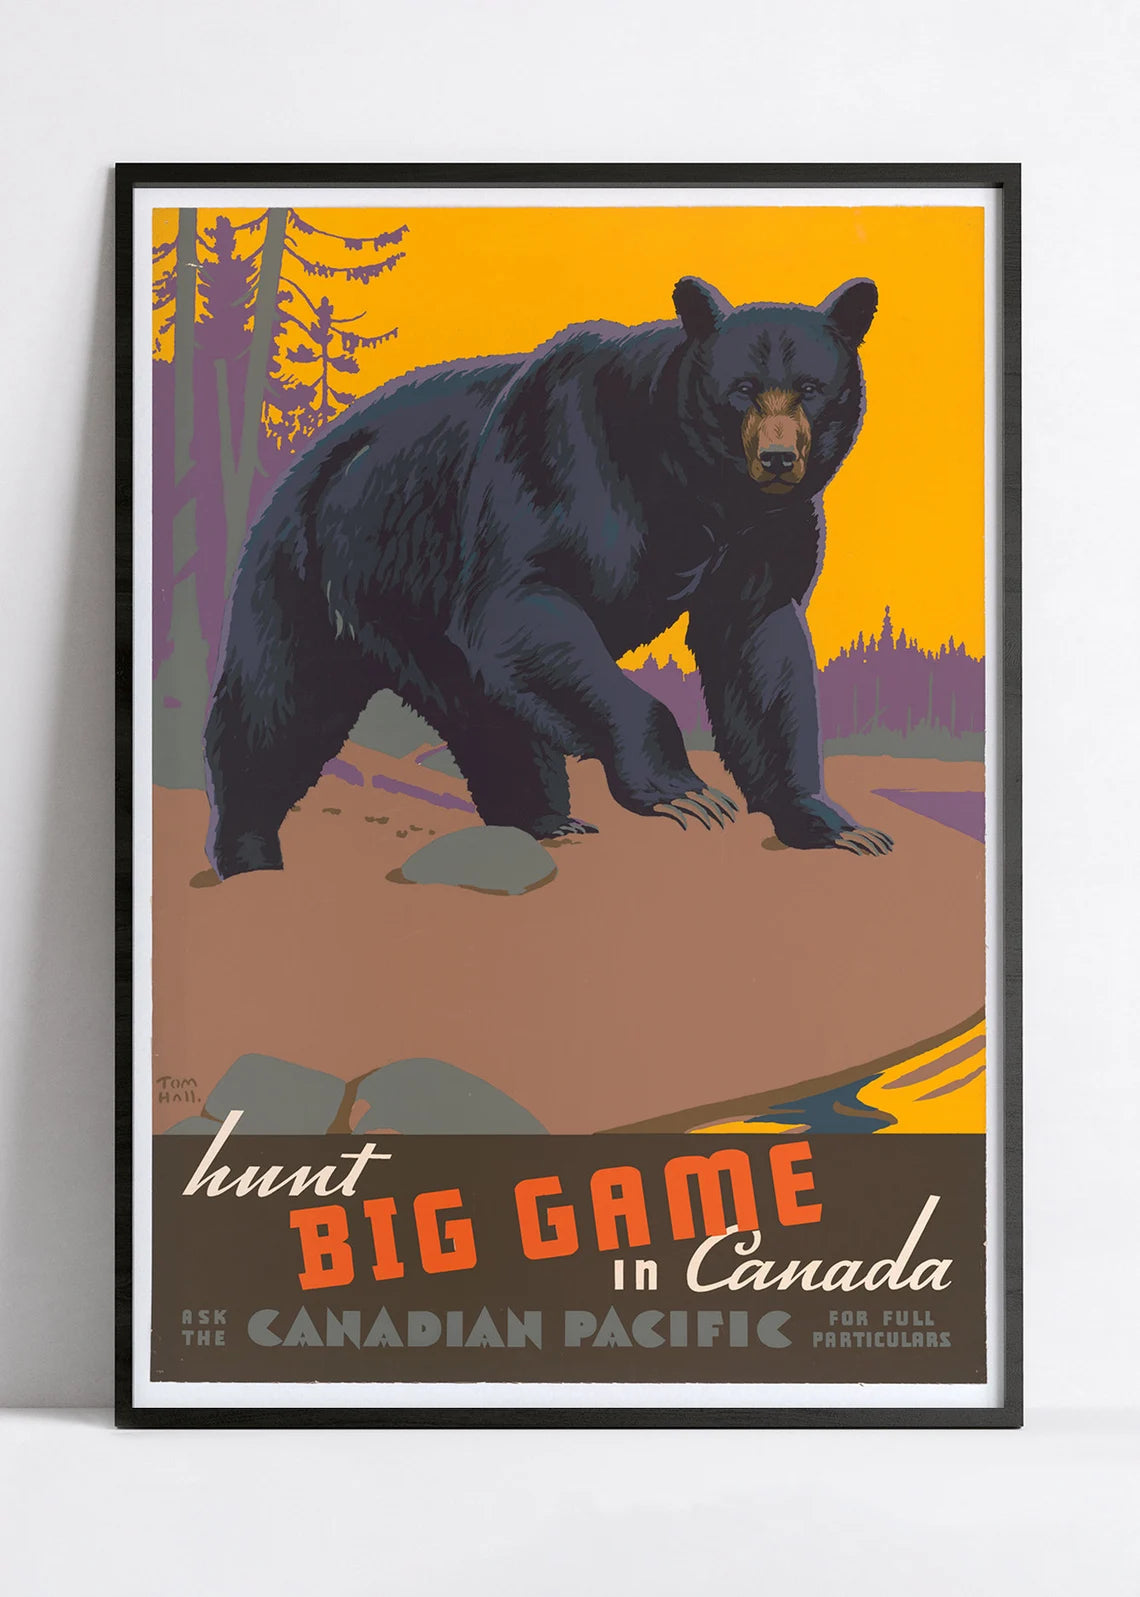 Affiche voyage vintage "Canada - Big Game" - Haute Définition - papier mat 230gr/m²